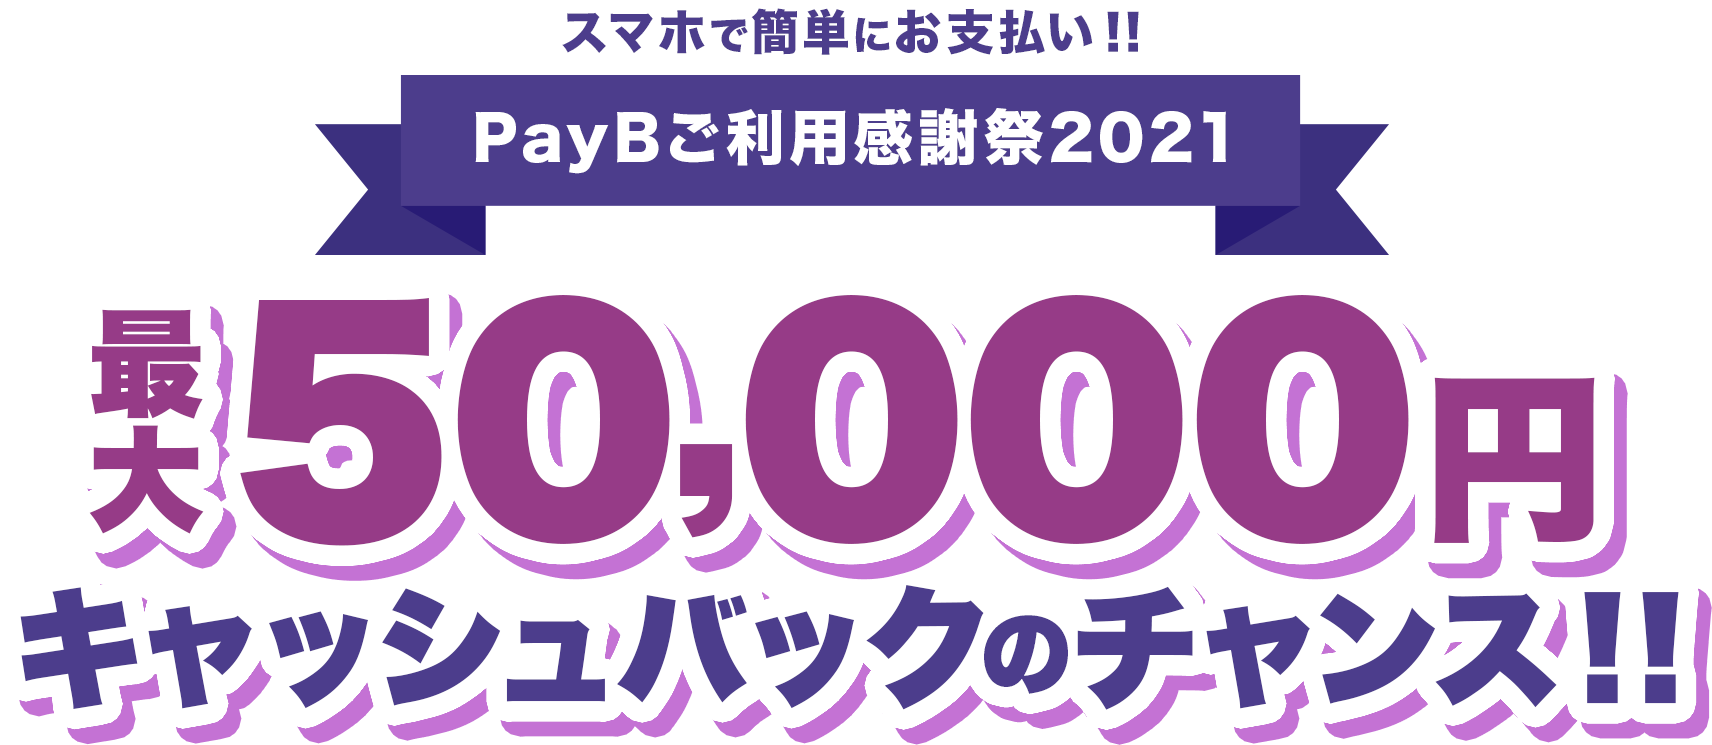 スマホで簡単にお支払い!!PayBご利用感謝祭2021 最大50,000円キャッシュバックのチャンス